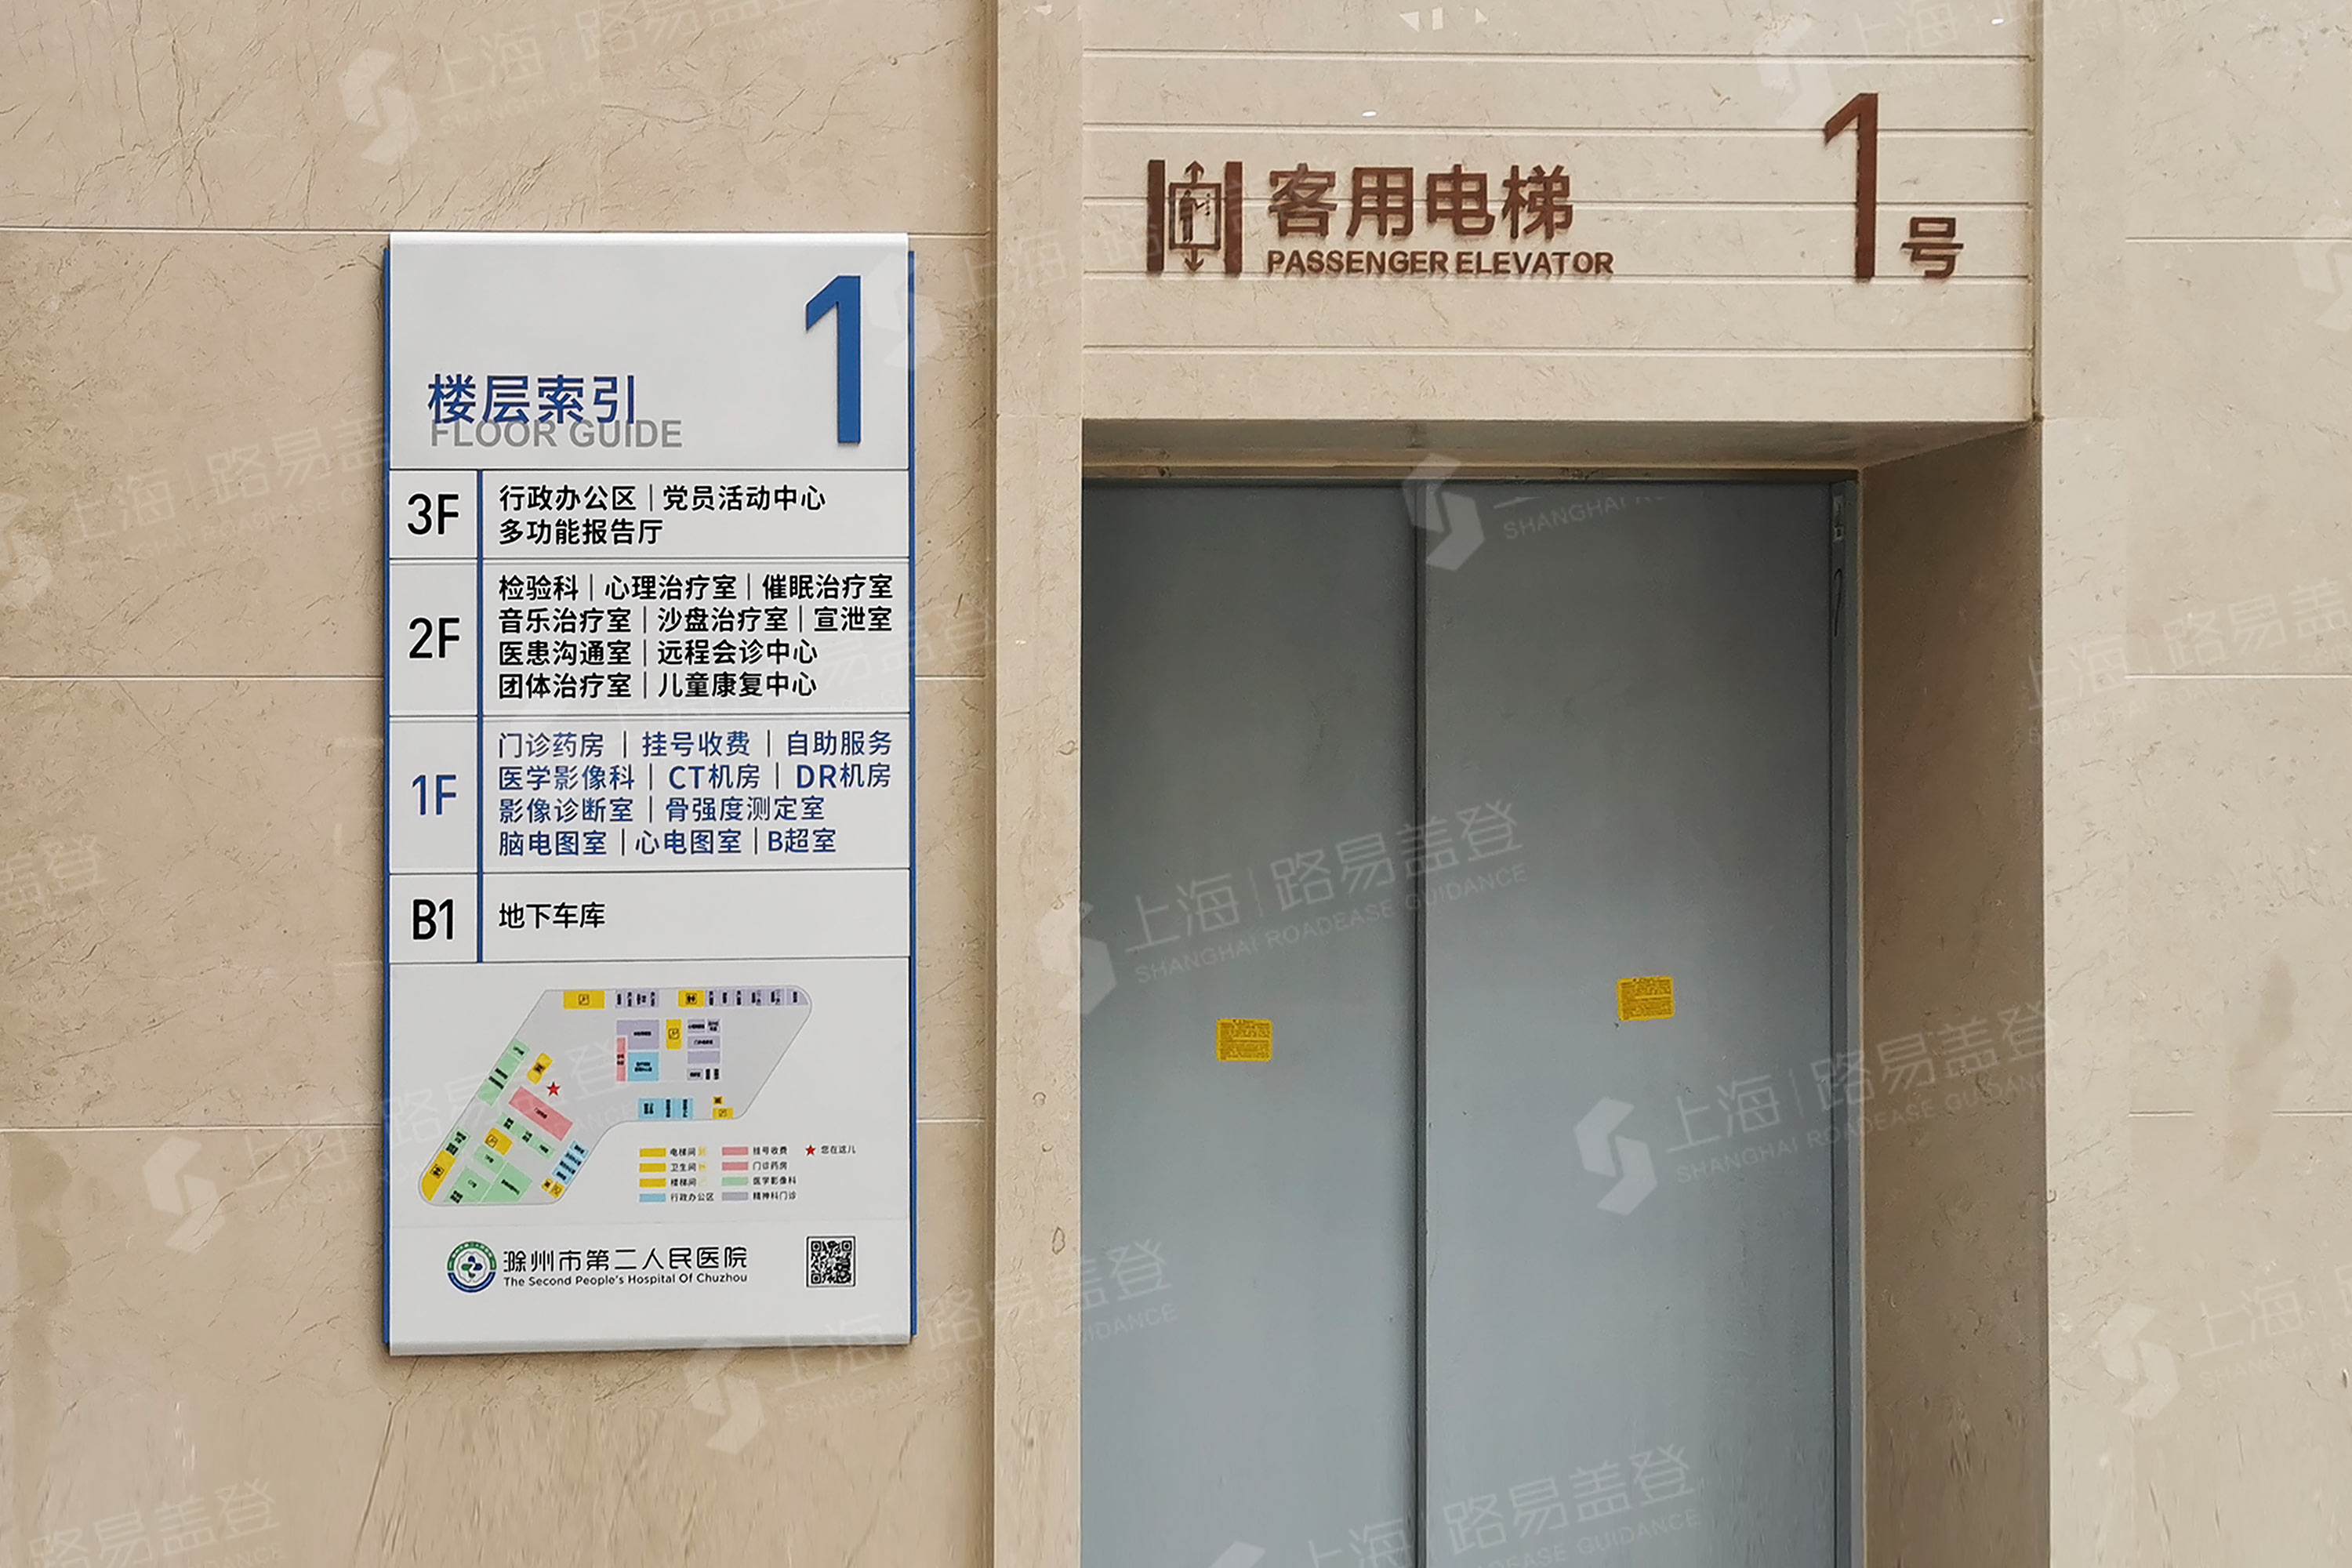 滁州市第二人民医院-标识标牌制作厂家-路易盖登-156 0173 1538